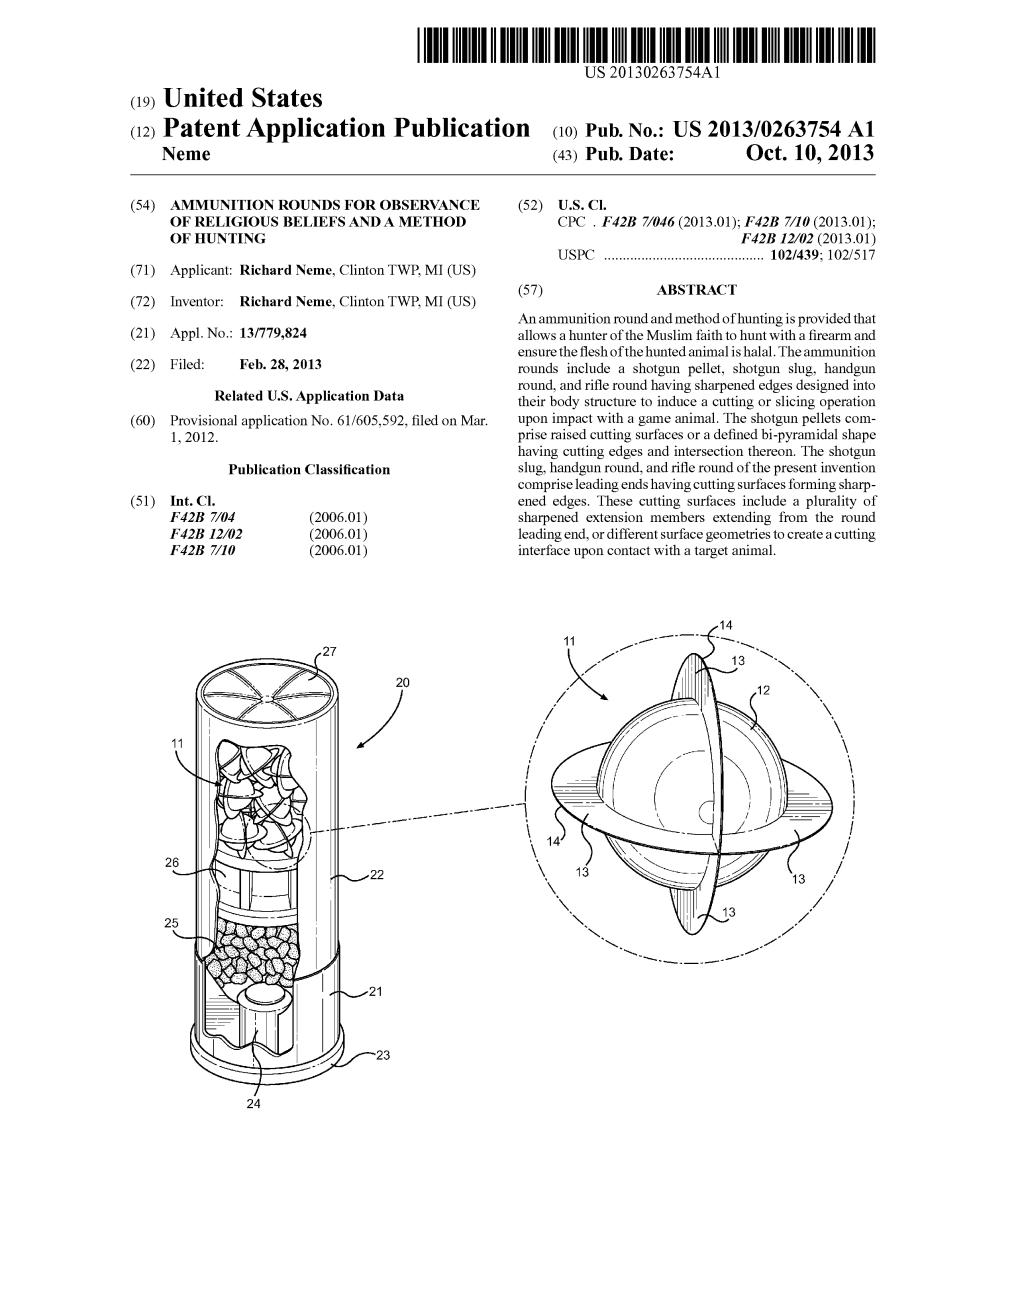 (12) Patent Application Publication (10) Pub. No.: US 2013/0263754 A1 Neme (43) Pub